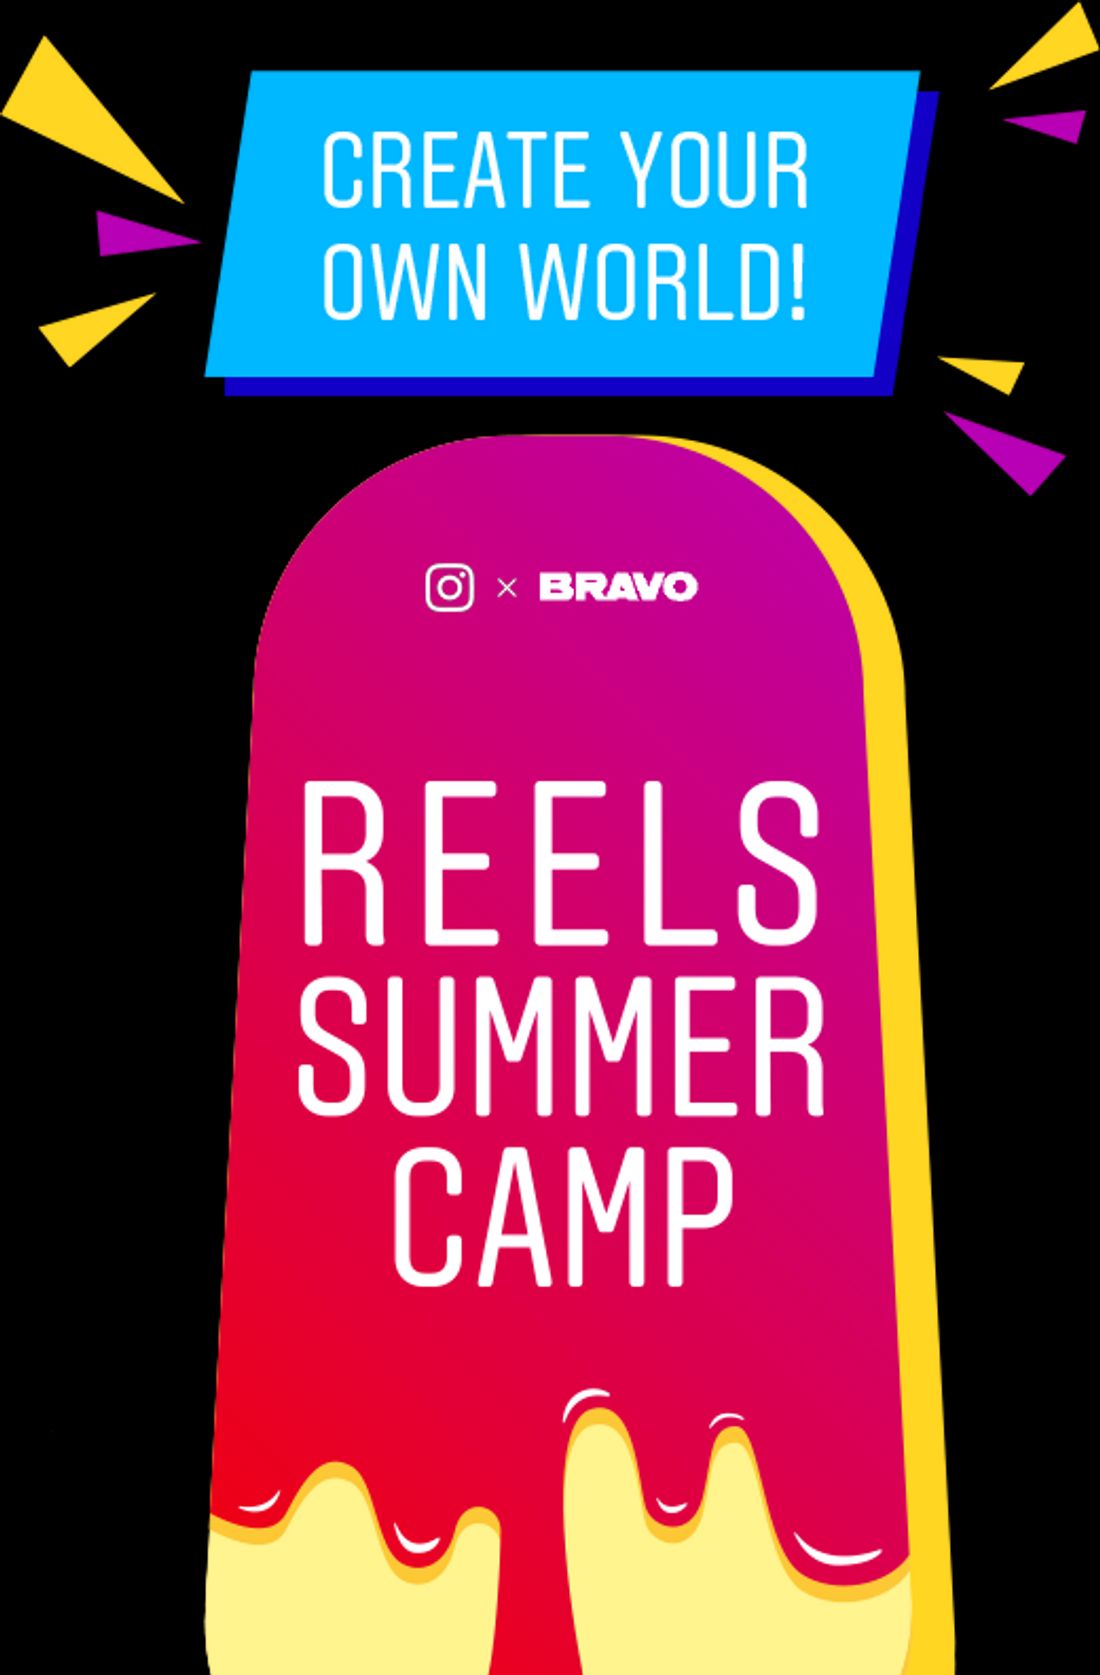 Reels Summer Camp: Mega Aktion von BRAVO und Instagram